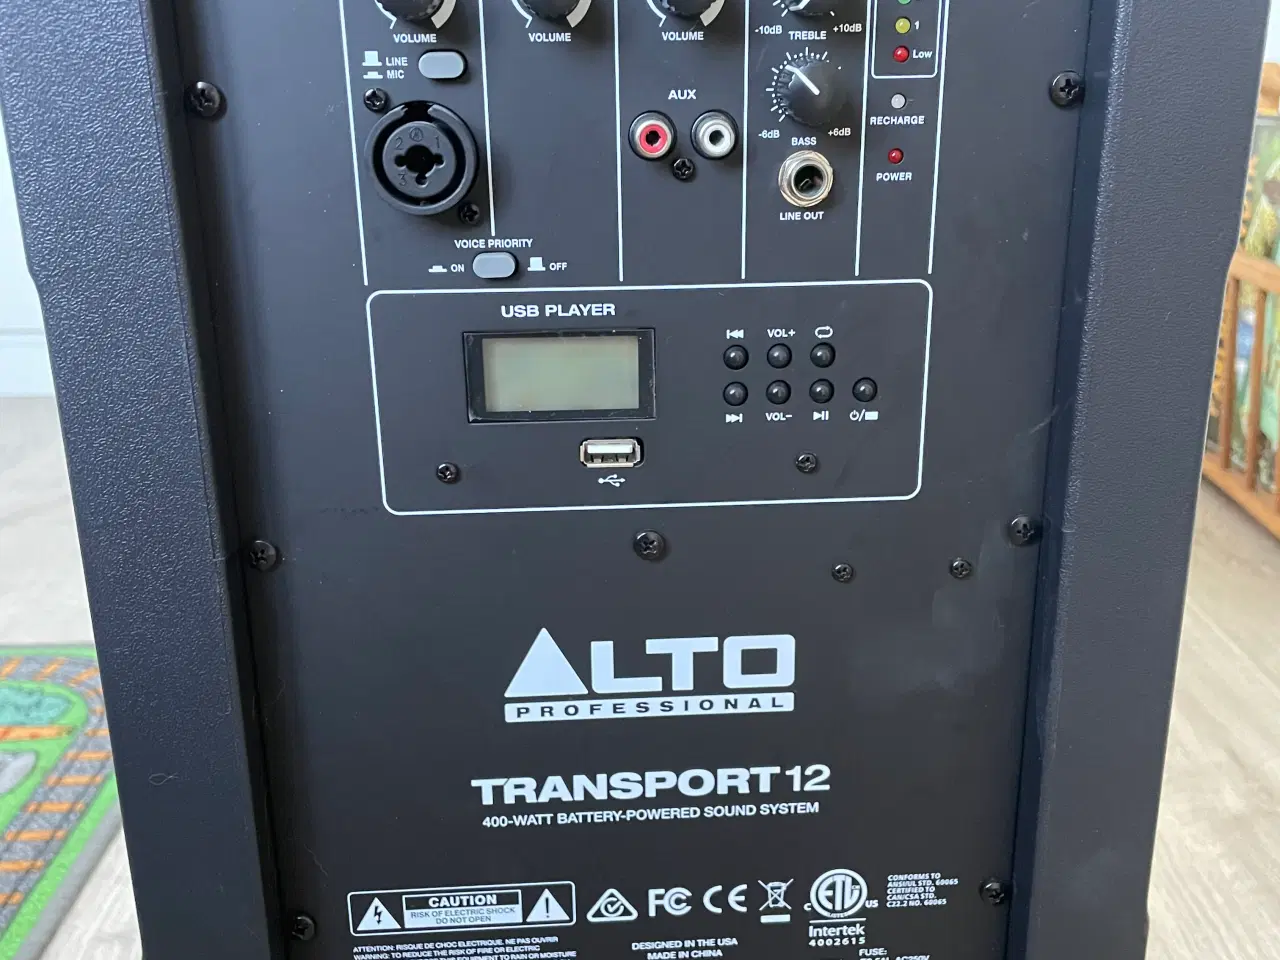 Billede 1 - ALTO professional transport 12